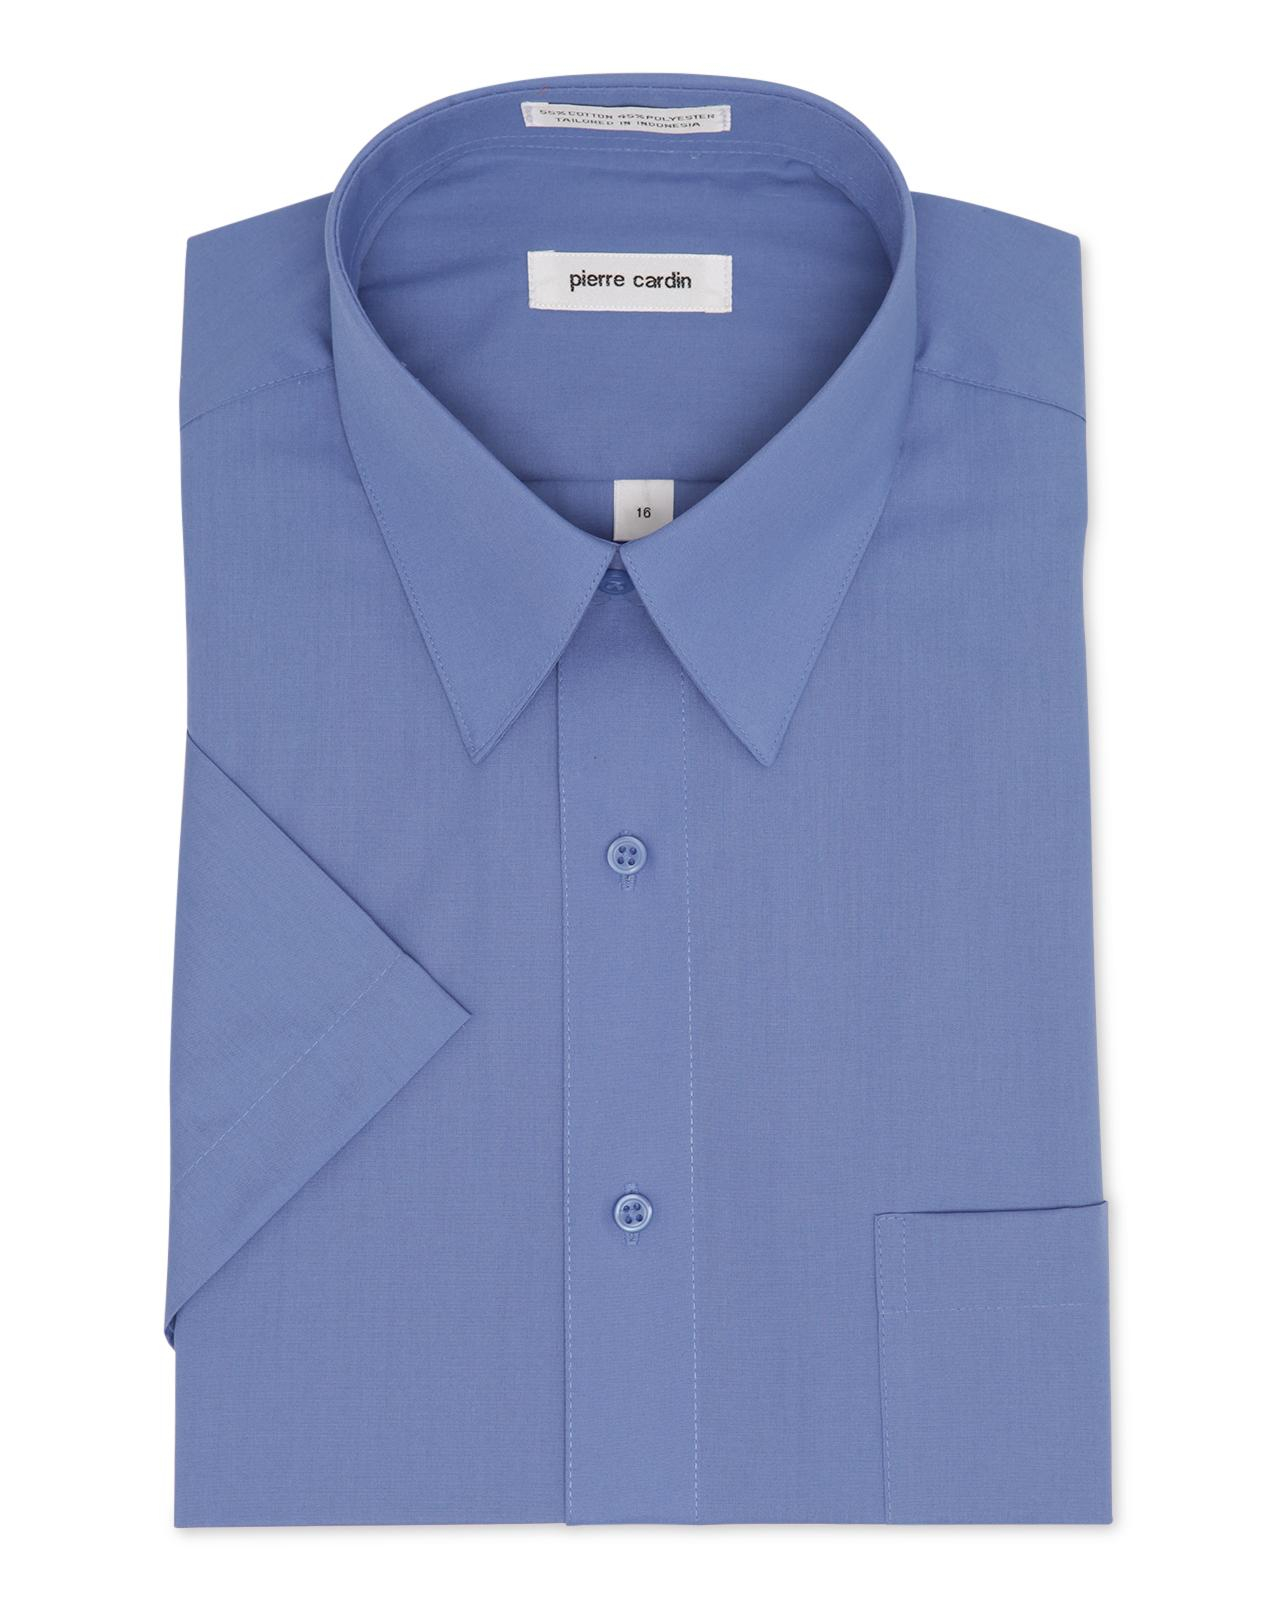 Pierre cardin Short Sleeve Ocean Blue Dress Shirt in Blue for Men | Lyst